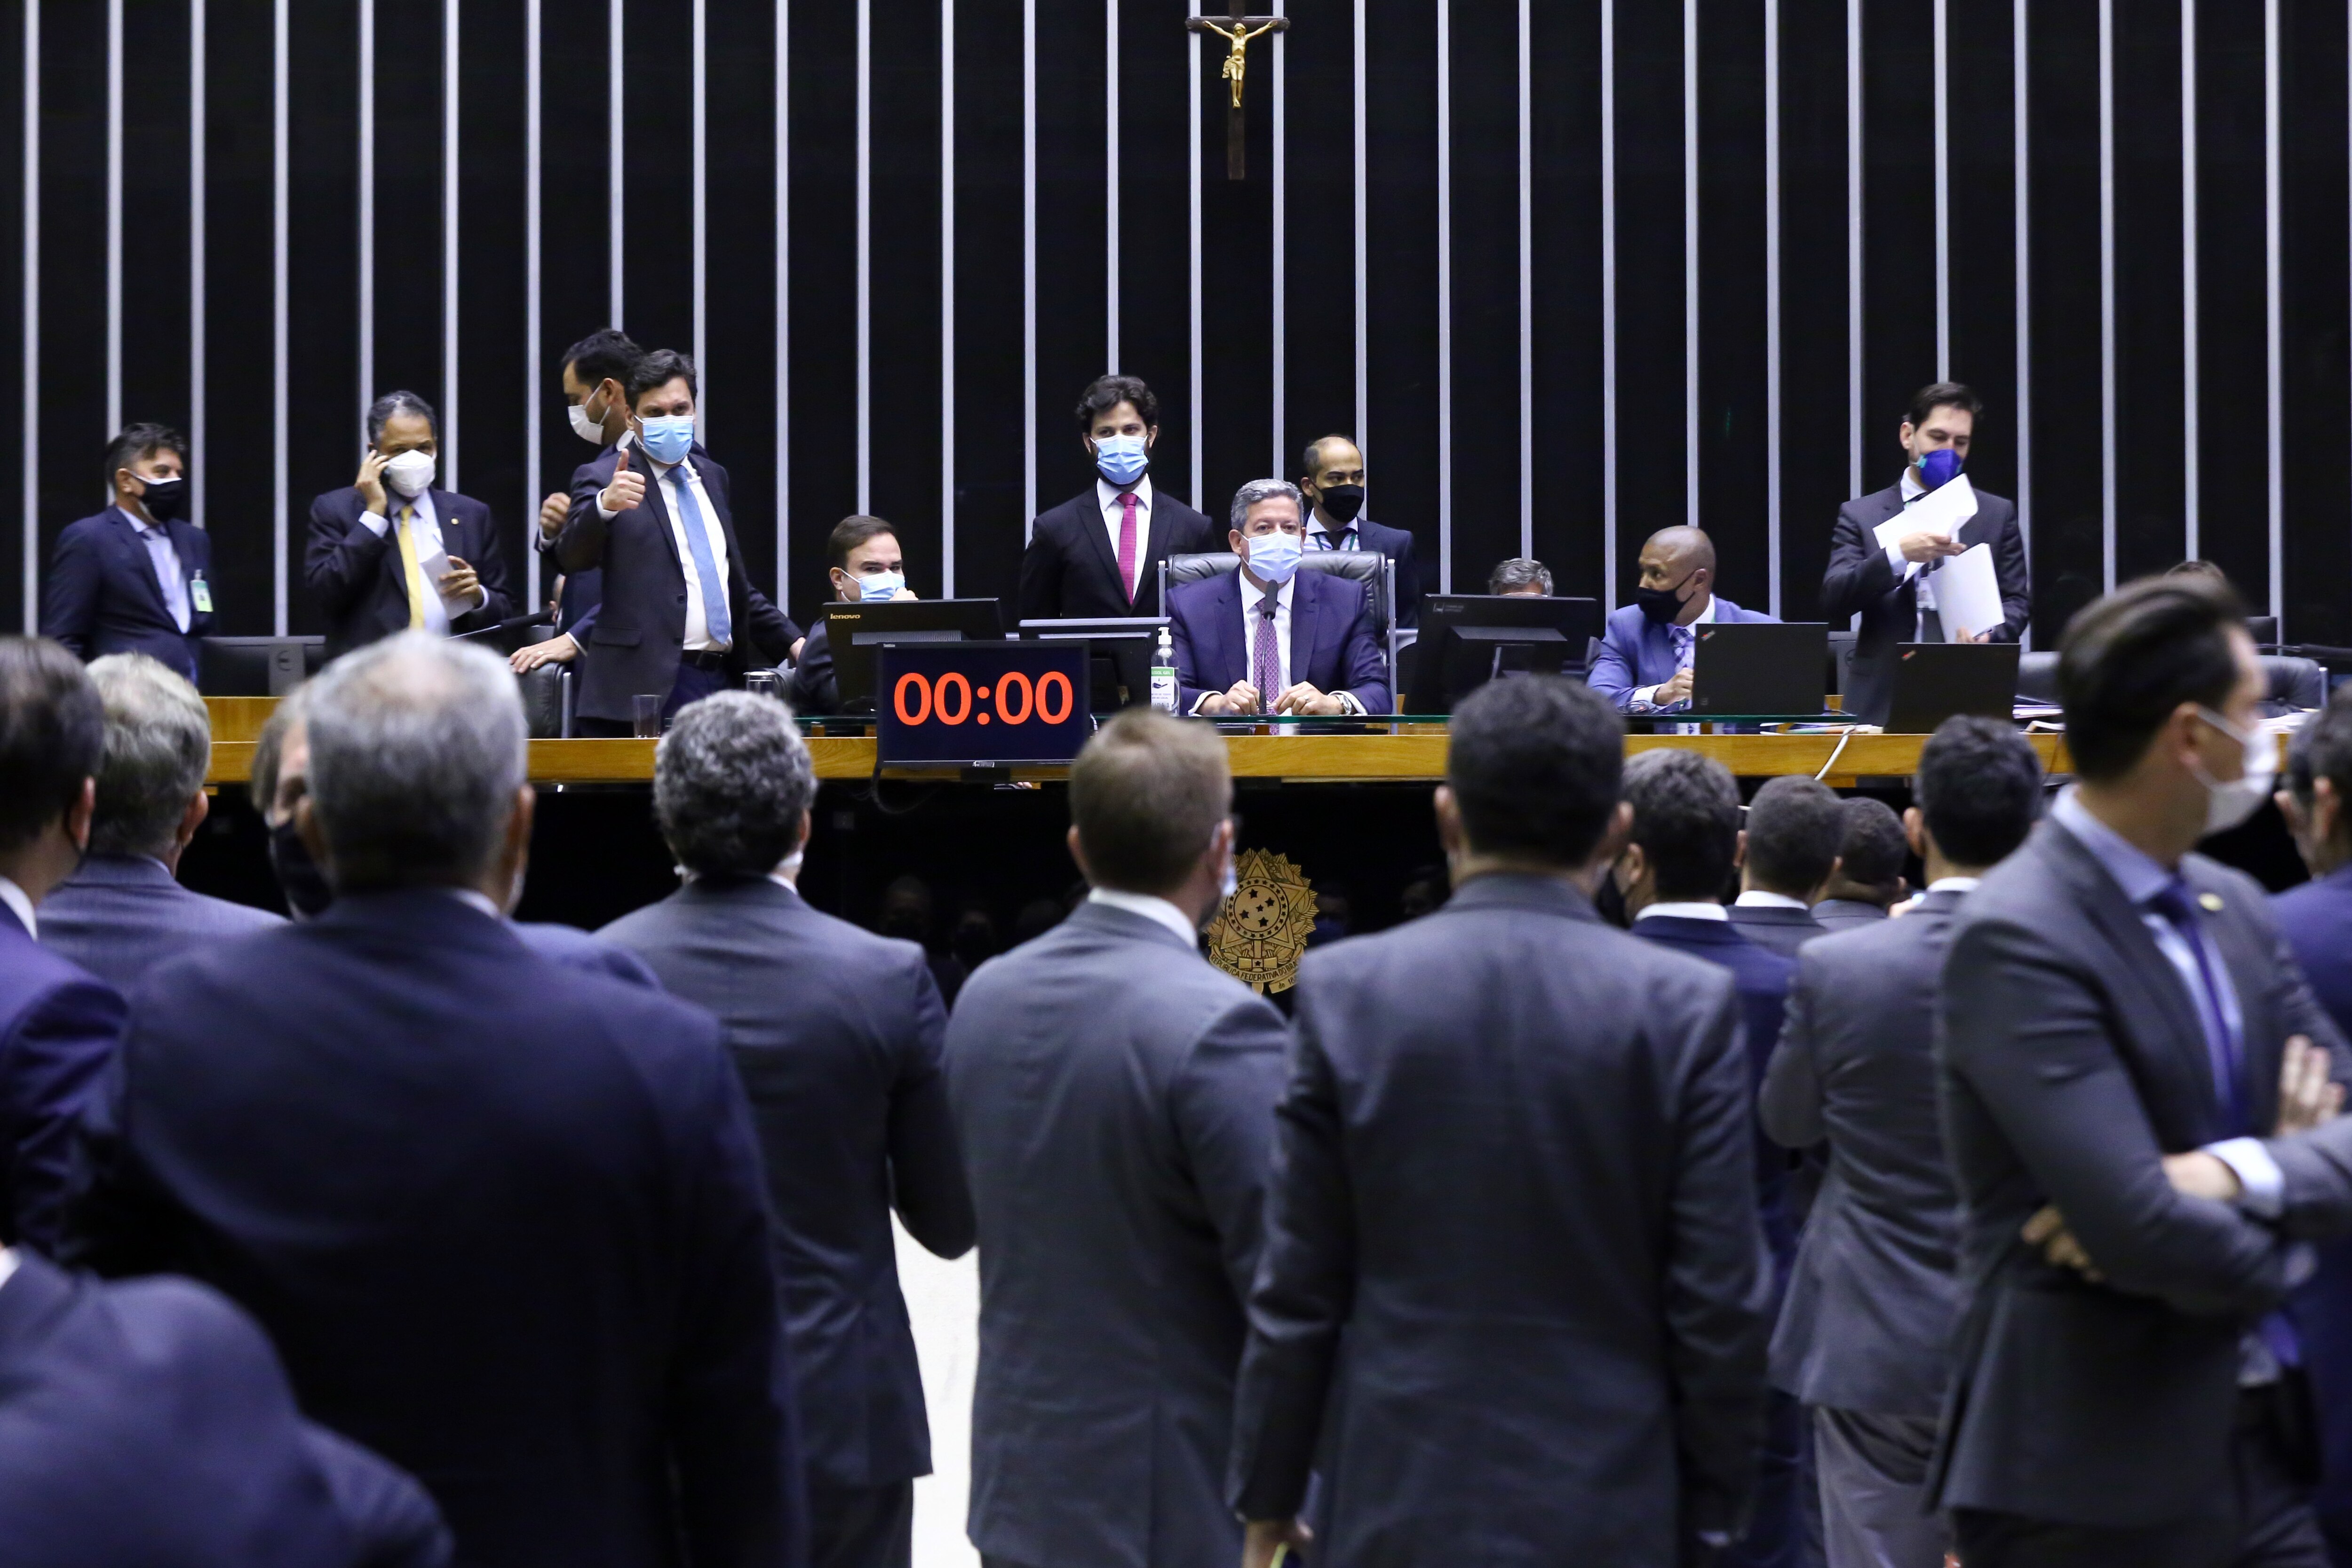 Bolsonaro 'disfarça', mas deve dobrar o valor do Fundo Eleitoral